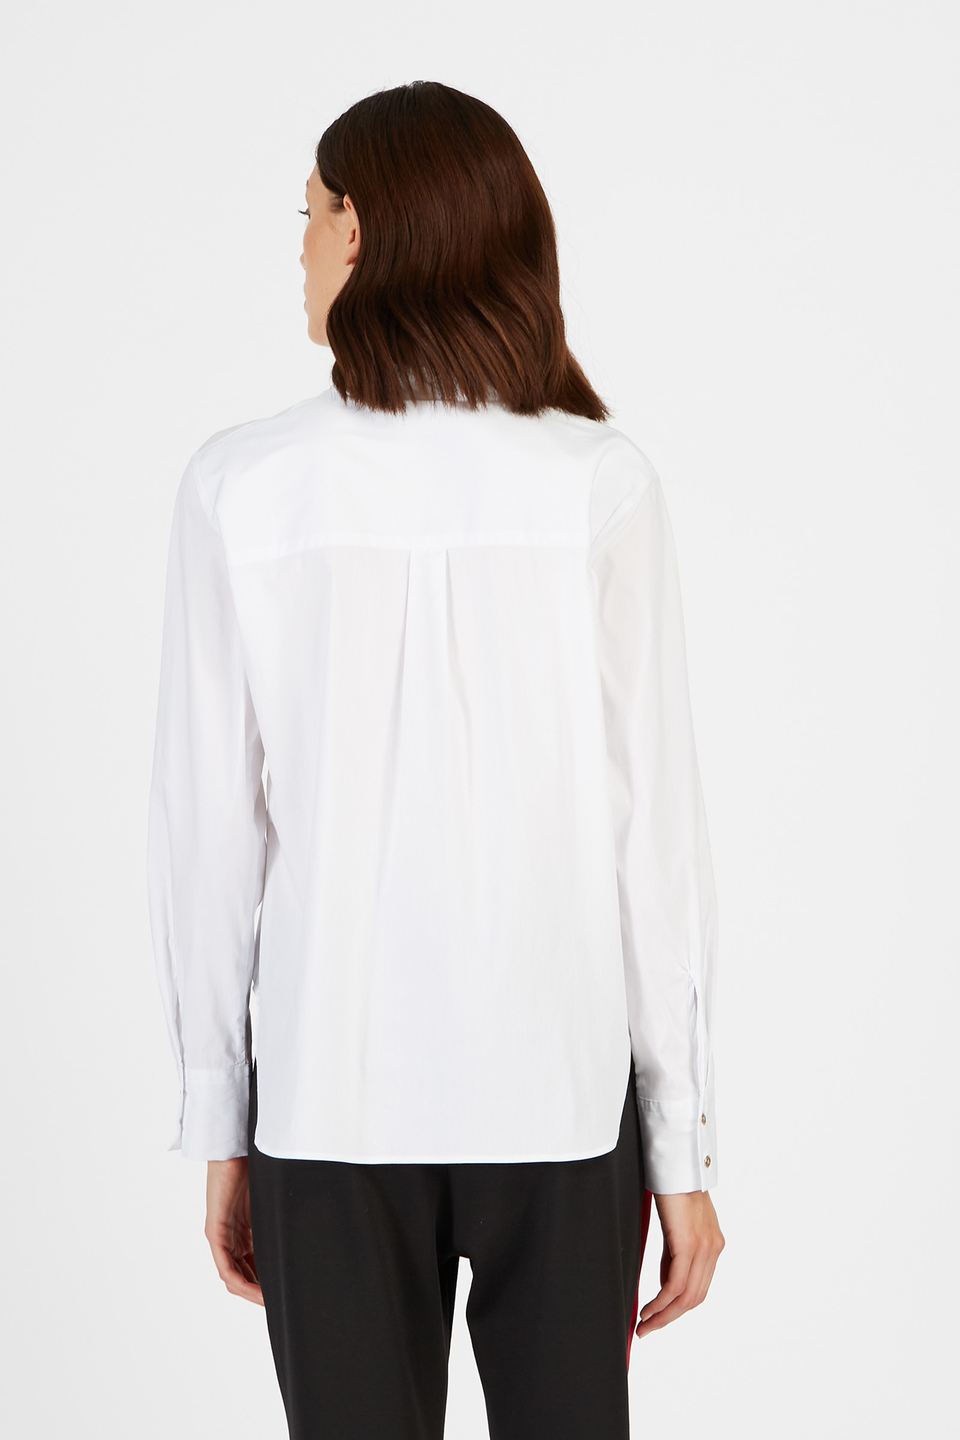 Plain-coloured cotton shirt | La Martina - Official Online Shop